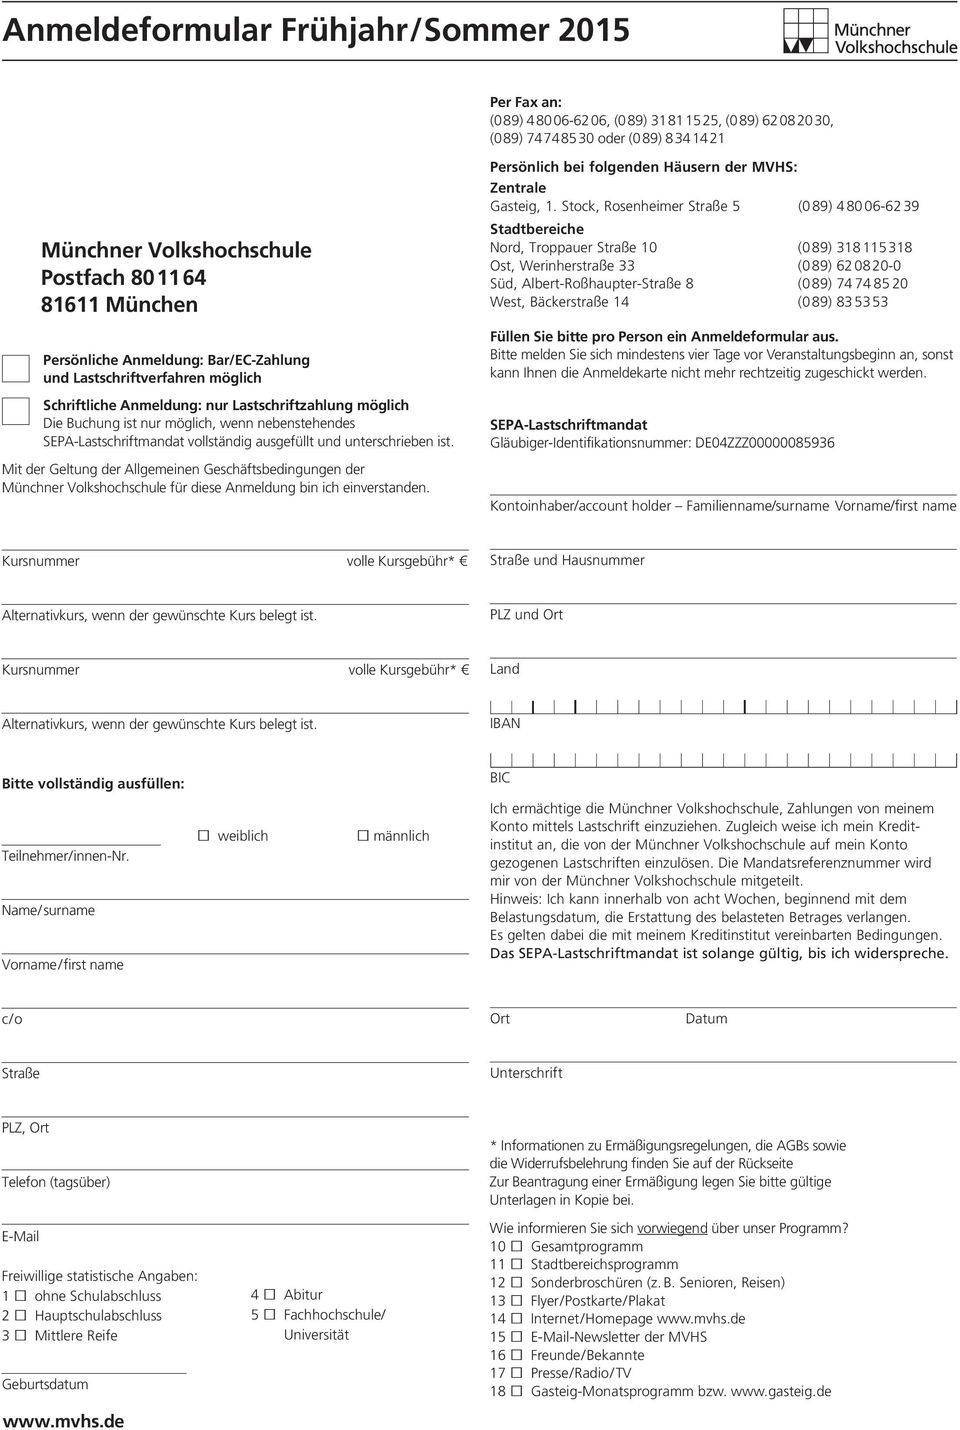 SEPA-Lastschriftmandat vollständig ausgefüllt und unterschrieben ist. t der Geltung der Allgemeinen Geschäftsbedingungen der Münchner Volkshochschule für diese Anmeldung bin ich einverstanden.